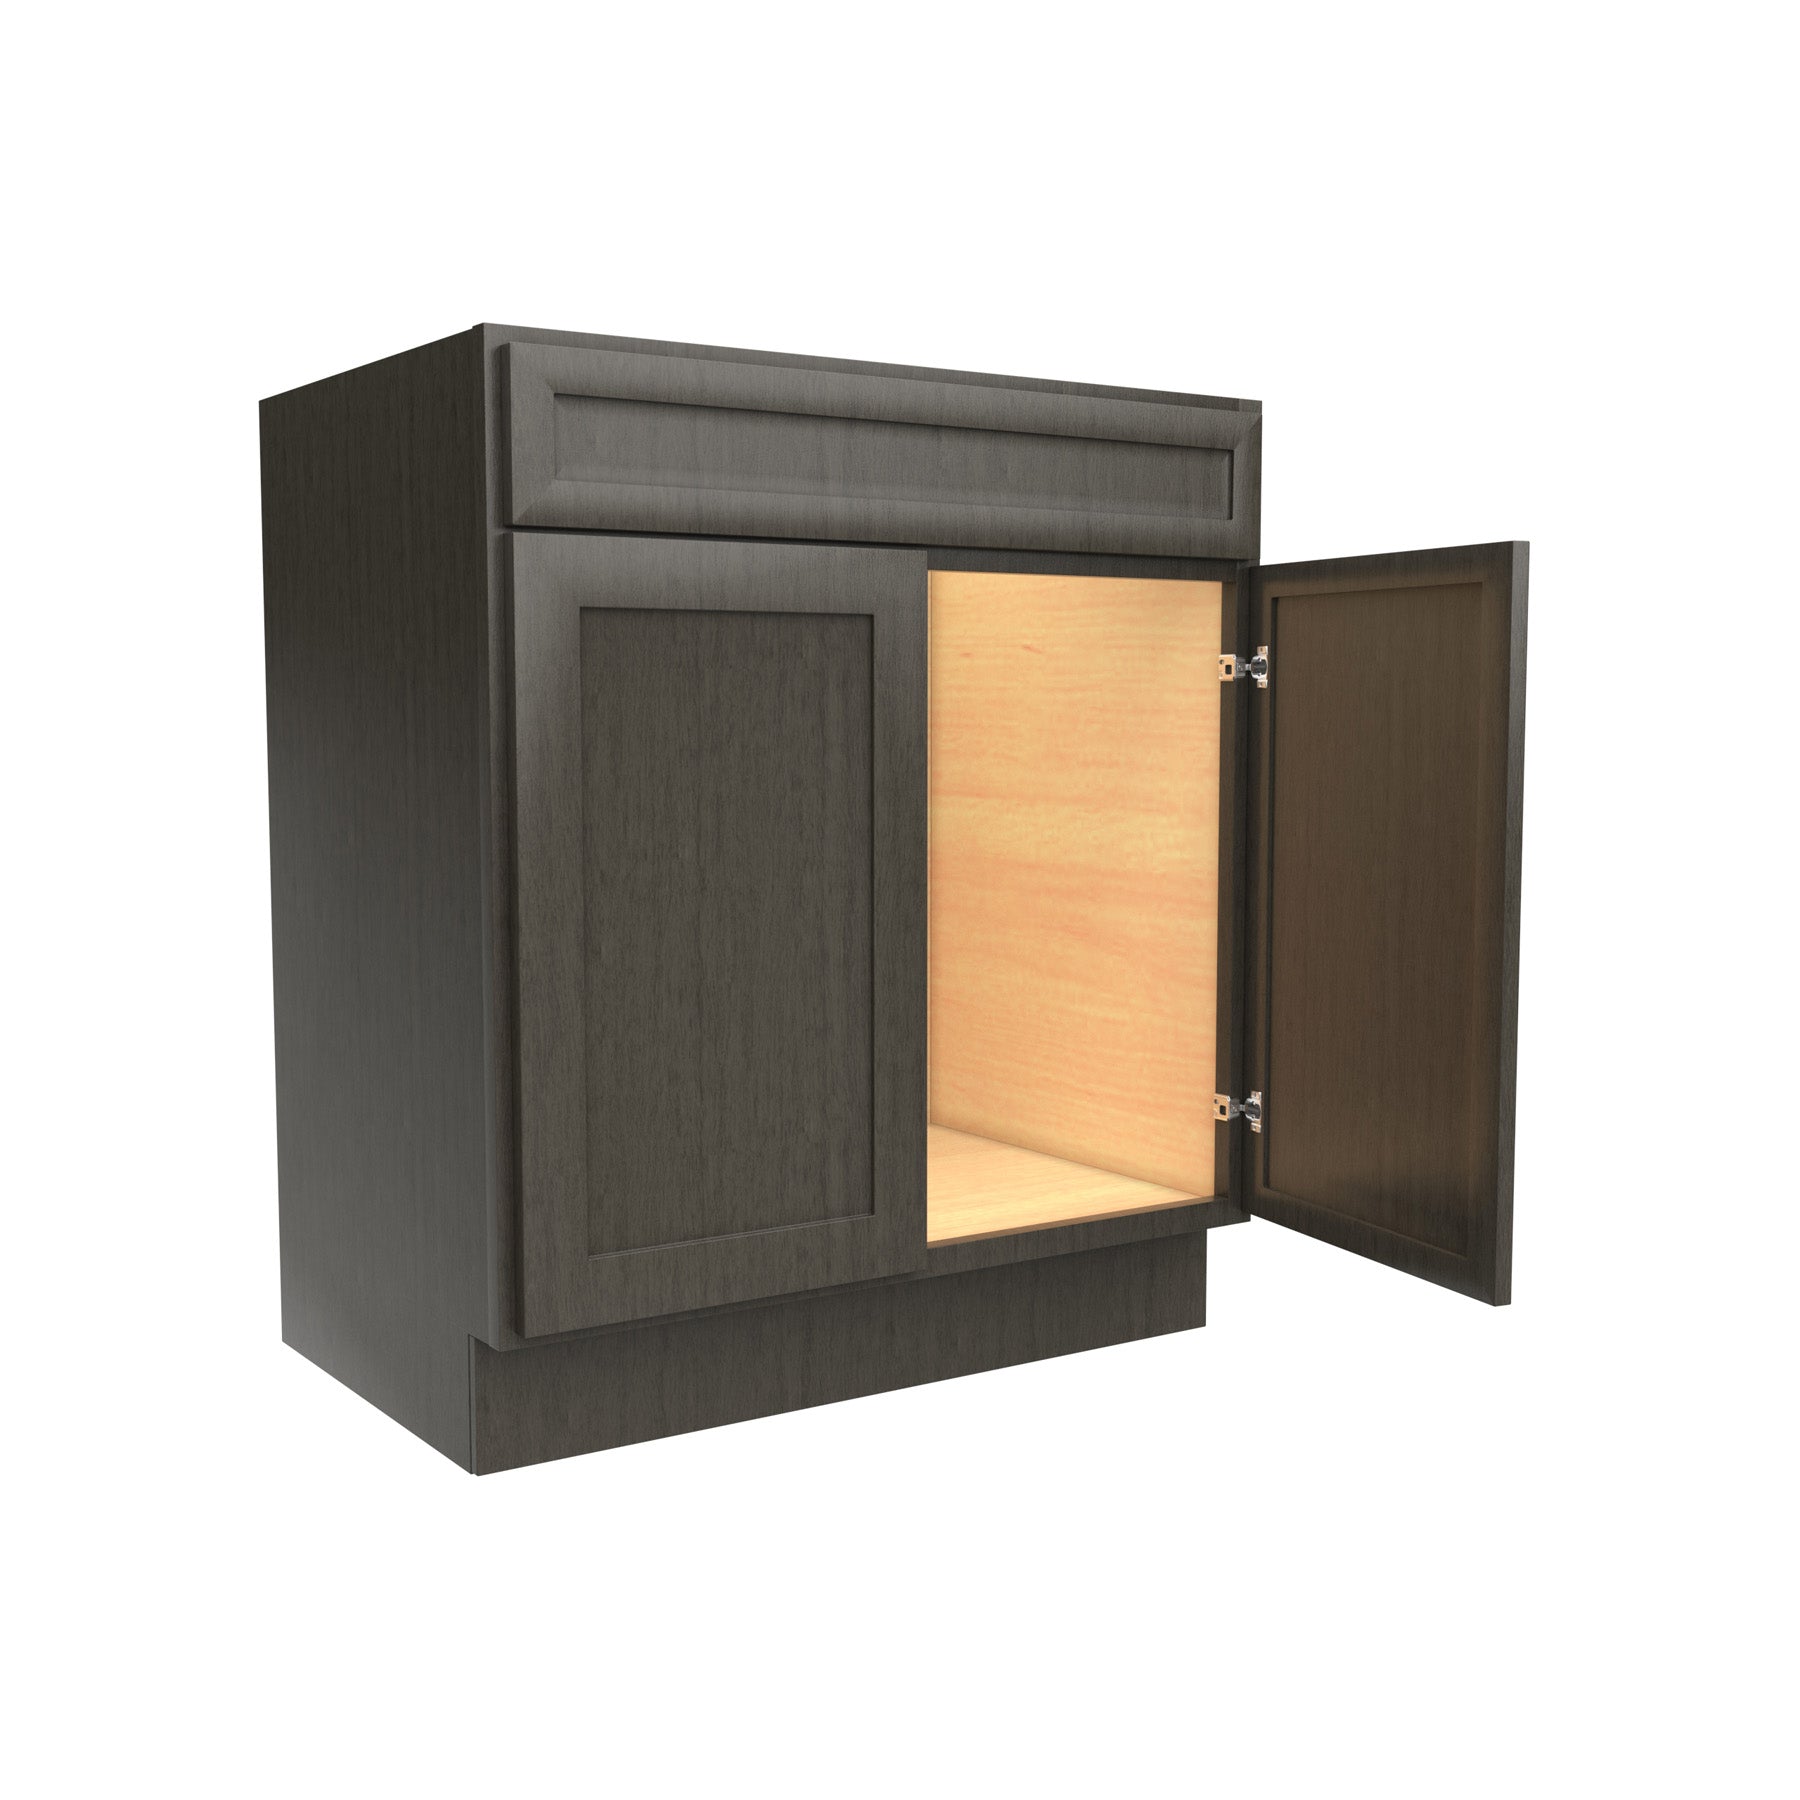 RTA - Elegant Smoky Grey - Double Door Vanity Sink Base Cabinet | 30"W x 34.5"H x 21"D